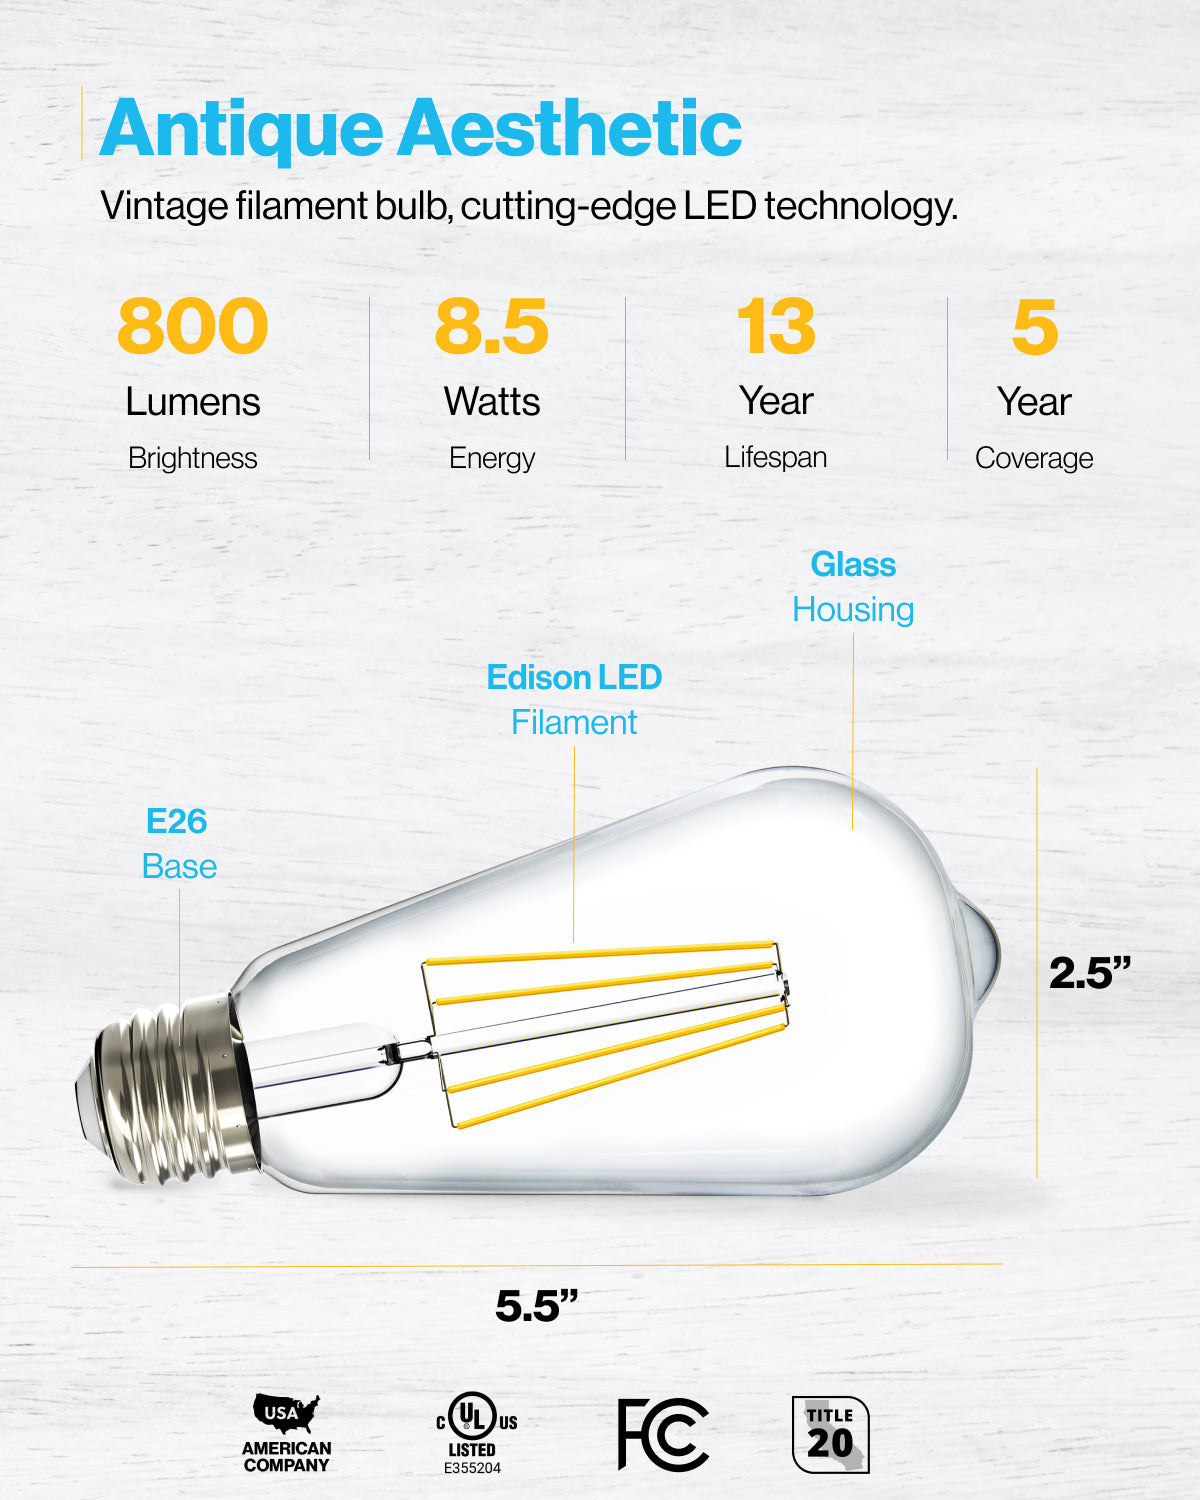 Ampoule Filament LED déco verre ciselé ST64, culot E27, 240 Lumens, Blanc  chaud